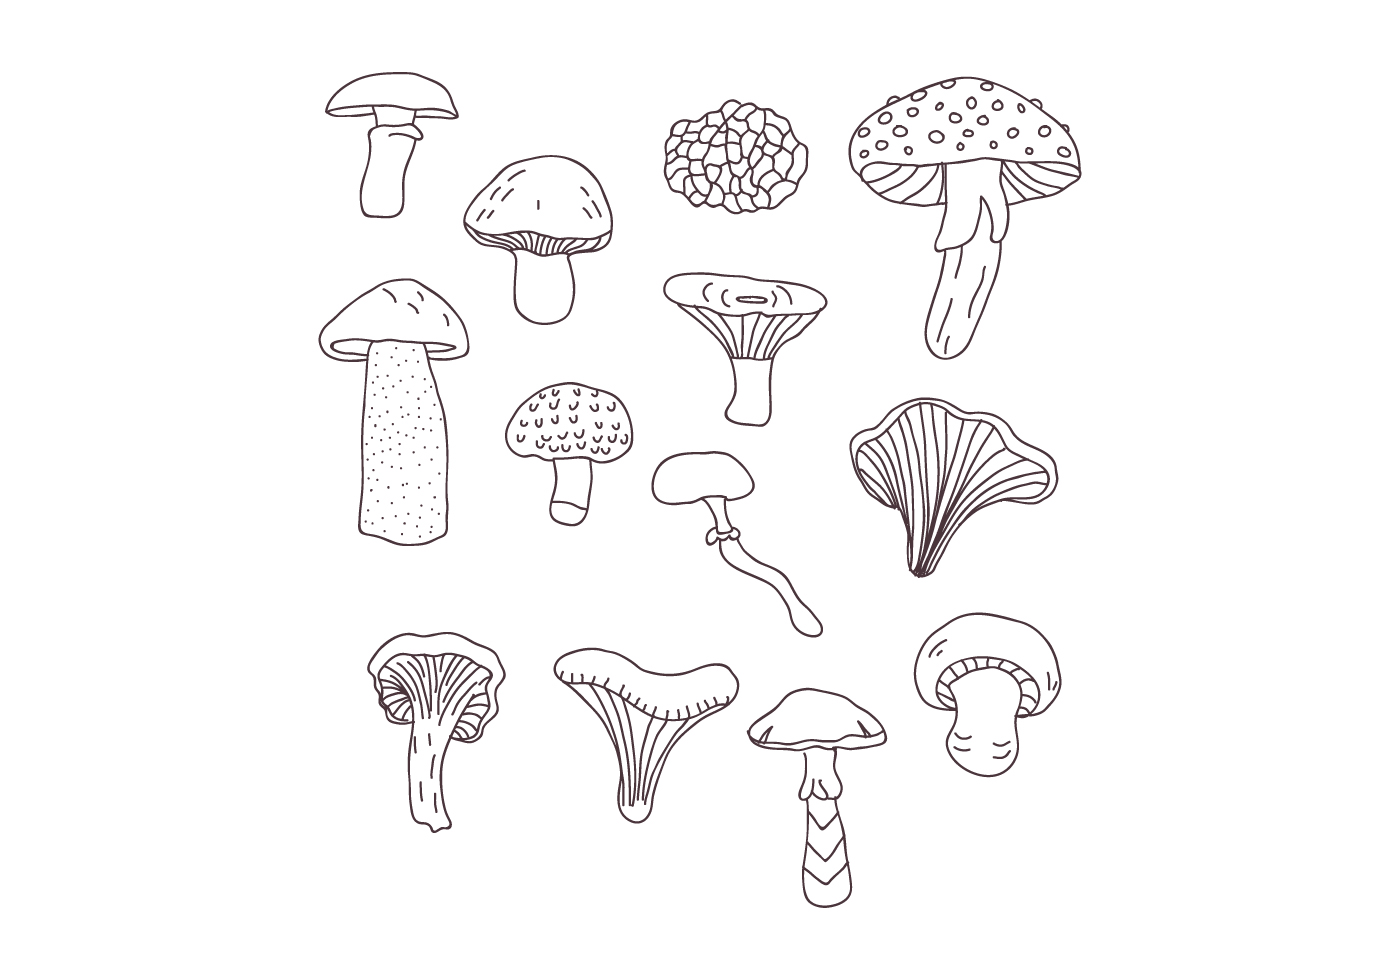 Botanical Mushroom Drawings Download Free Vectors Clipart